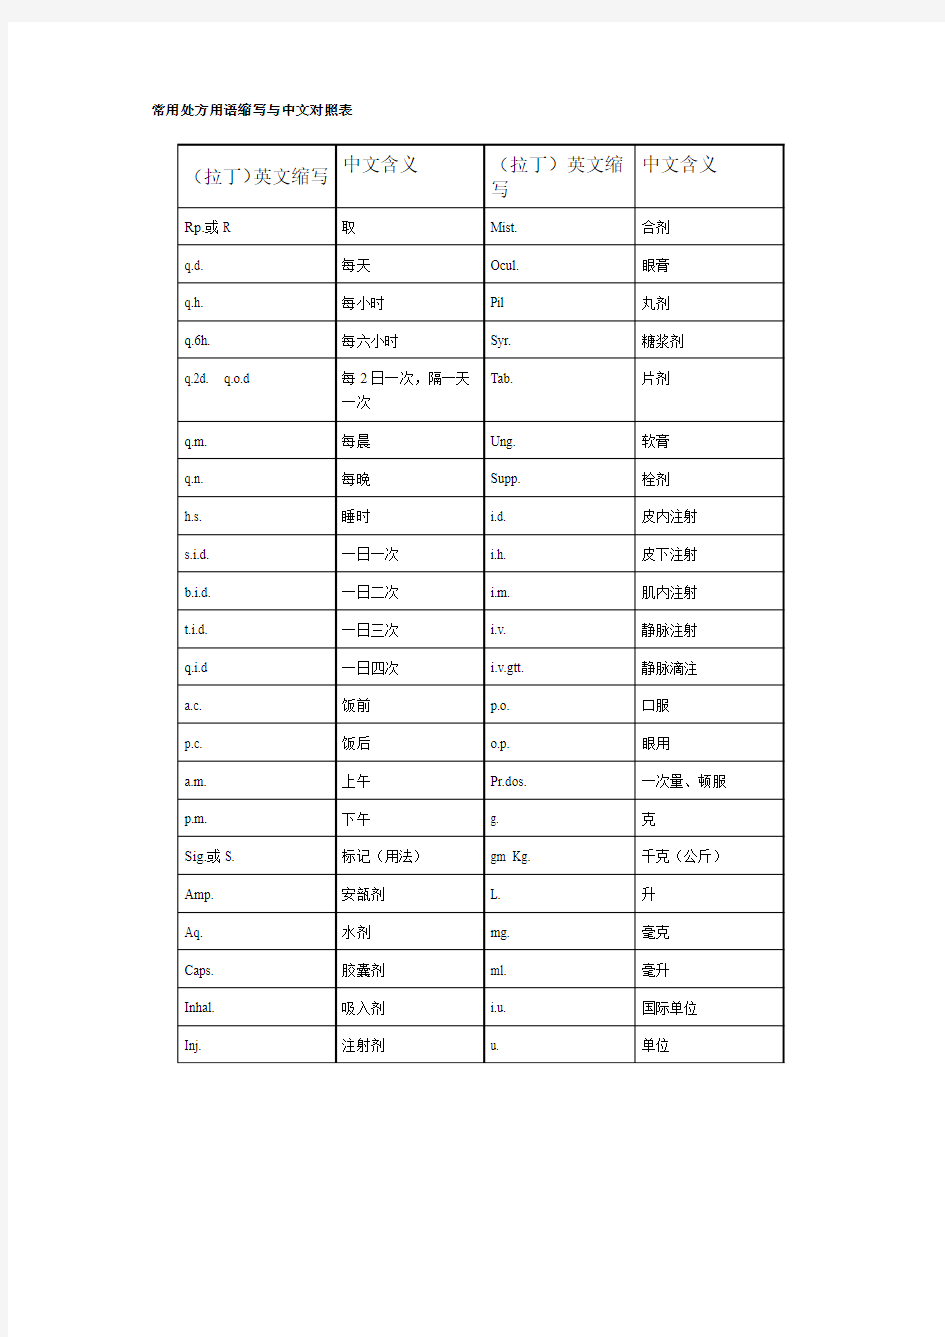 常用处方用语缩写与中文对照表